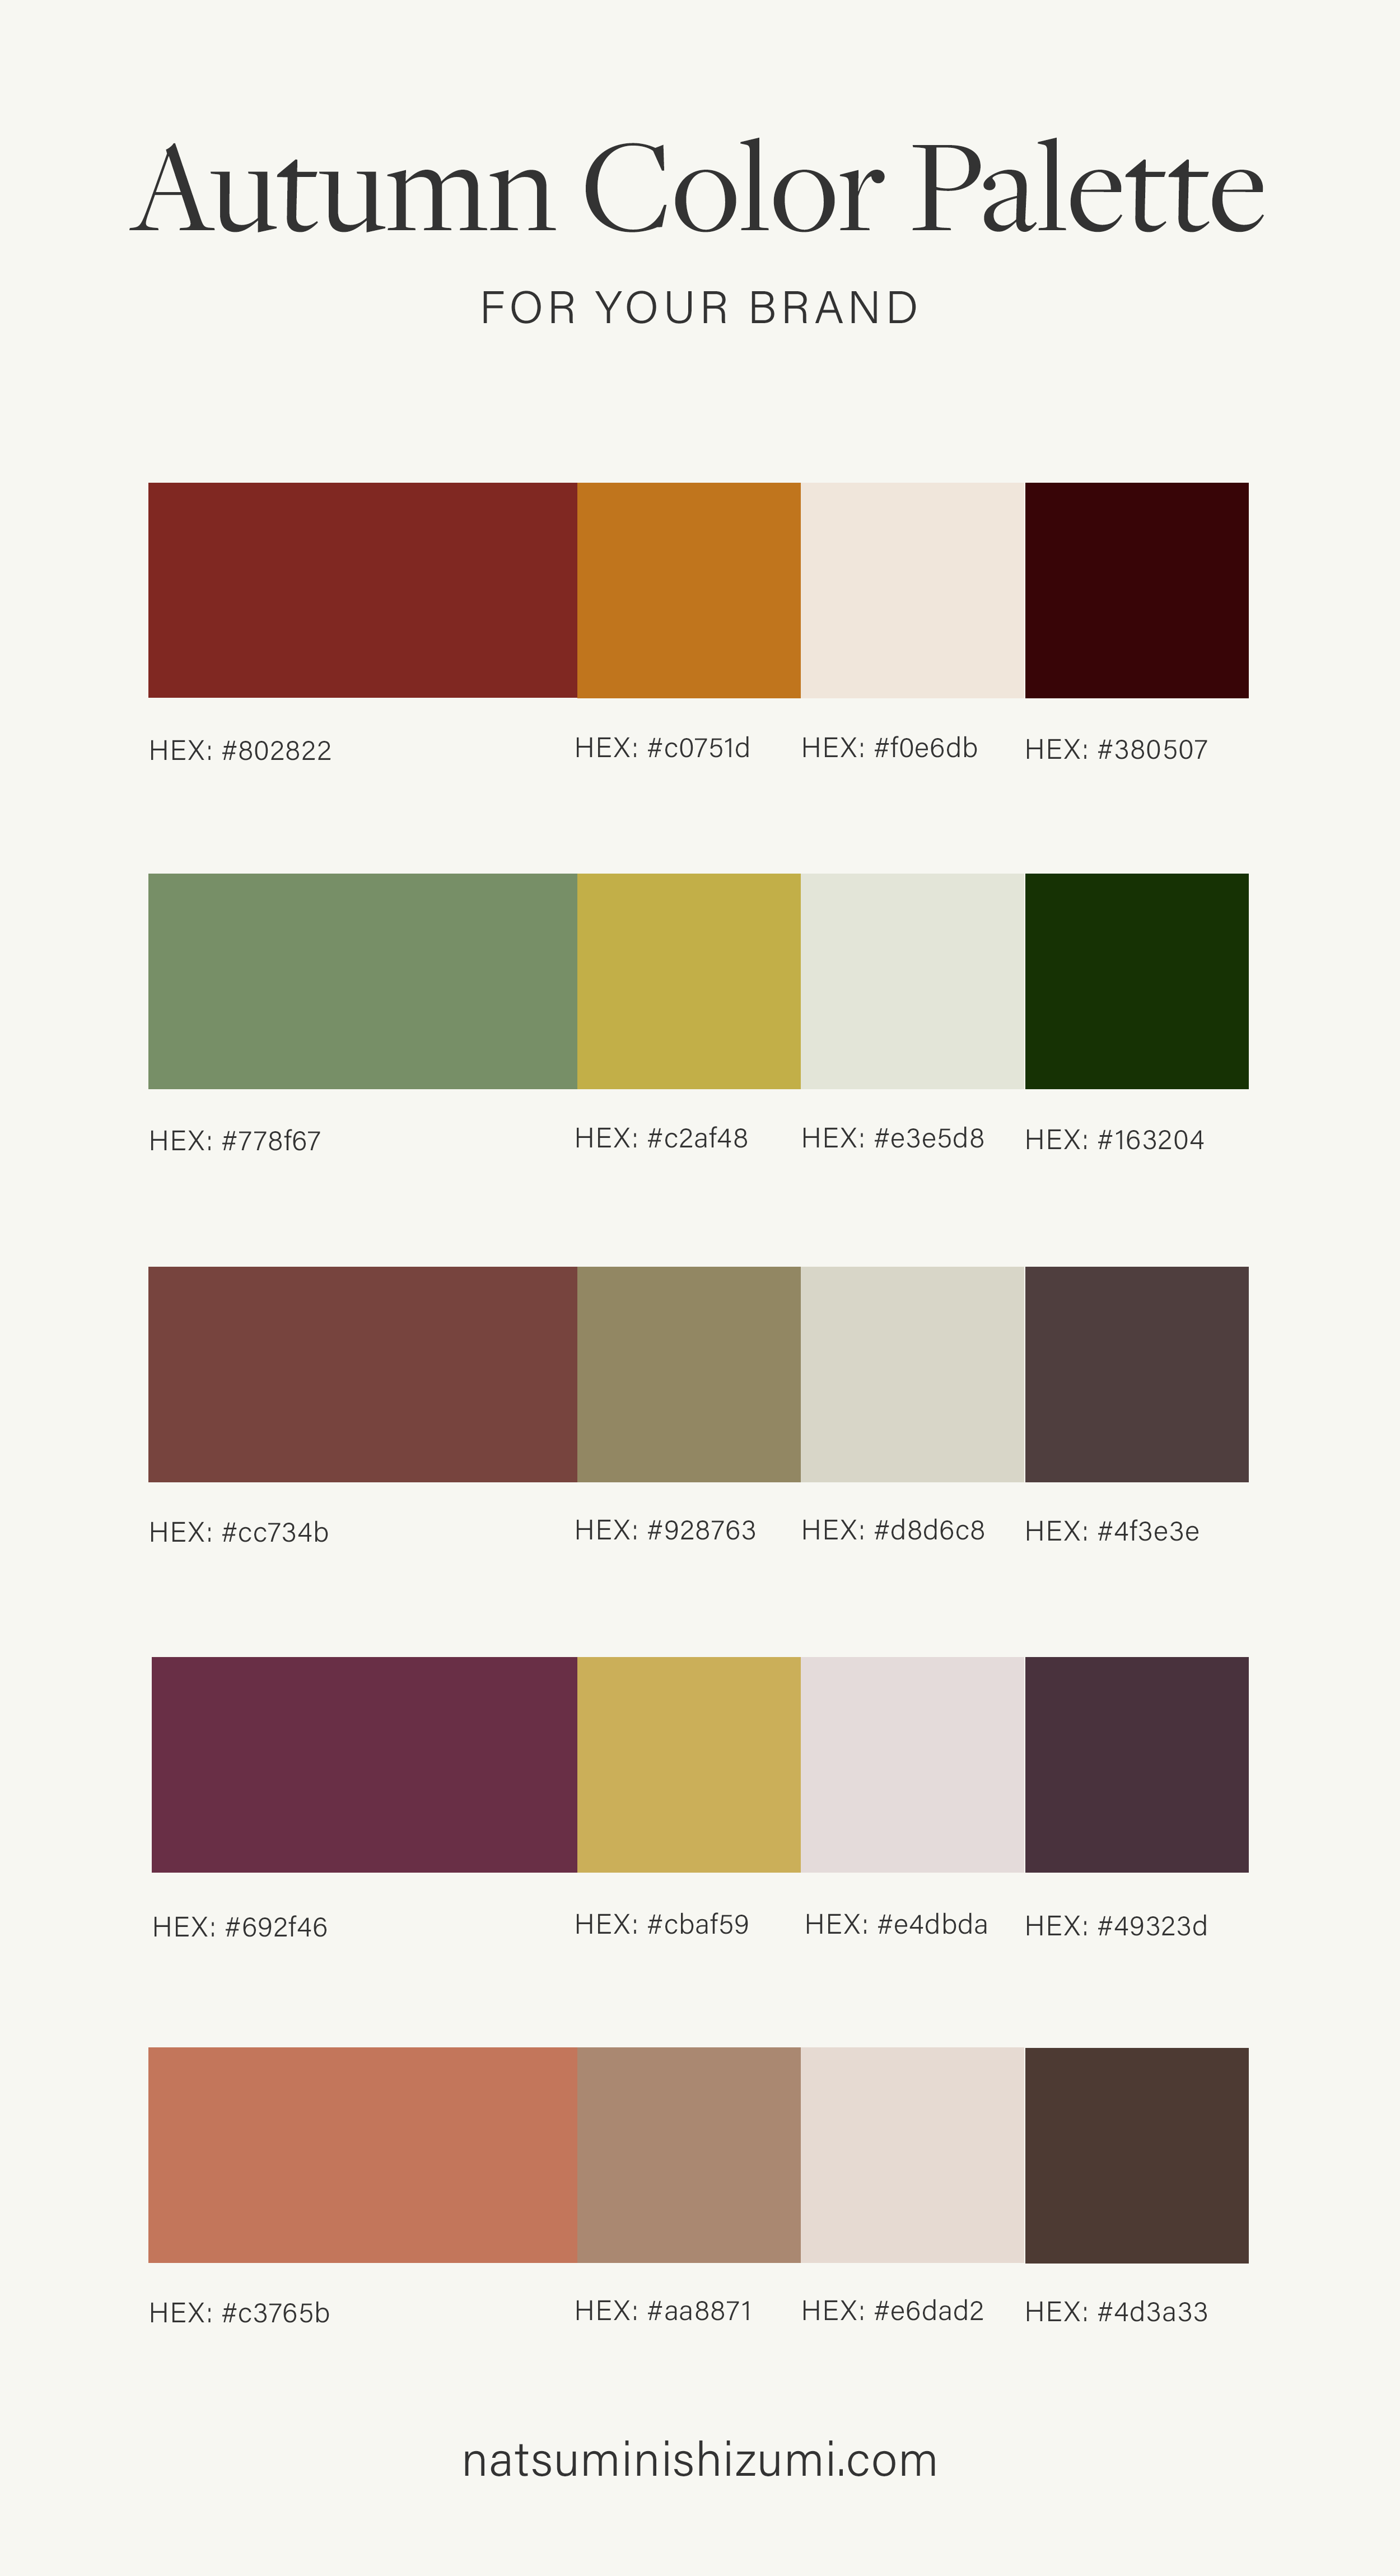 5 Autumn Color Palette Ideas for Your Brand - Natsumi Nishizumi Design ...